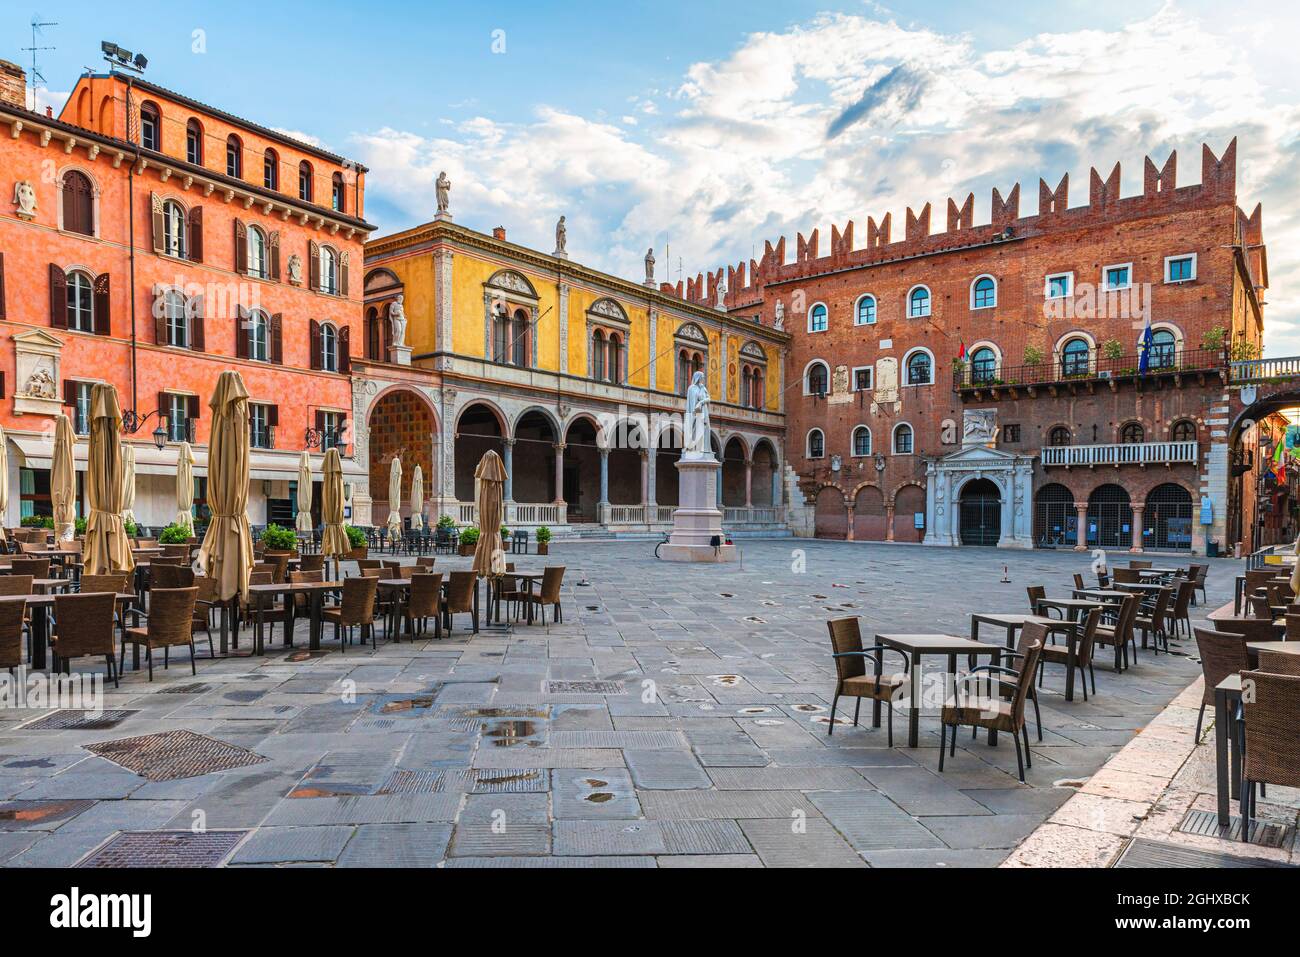 Place de la vieille ville de Vérone Piazza dei Signori avec statue de Dante et café de rue sans personne. Vénétie, Italie. Destination touristique Banque D'Images